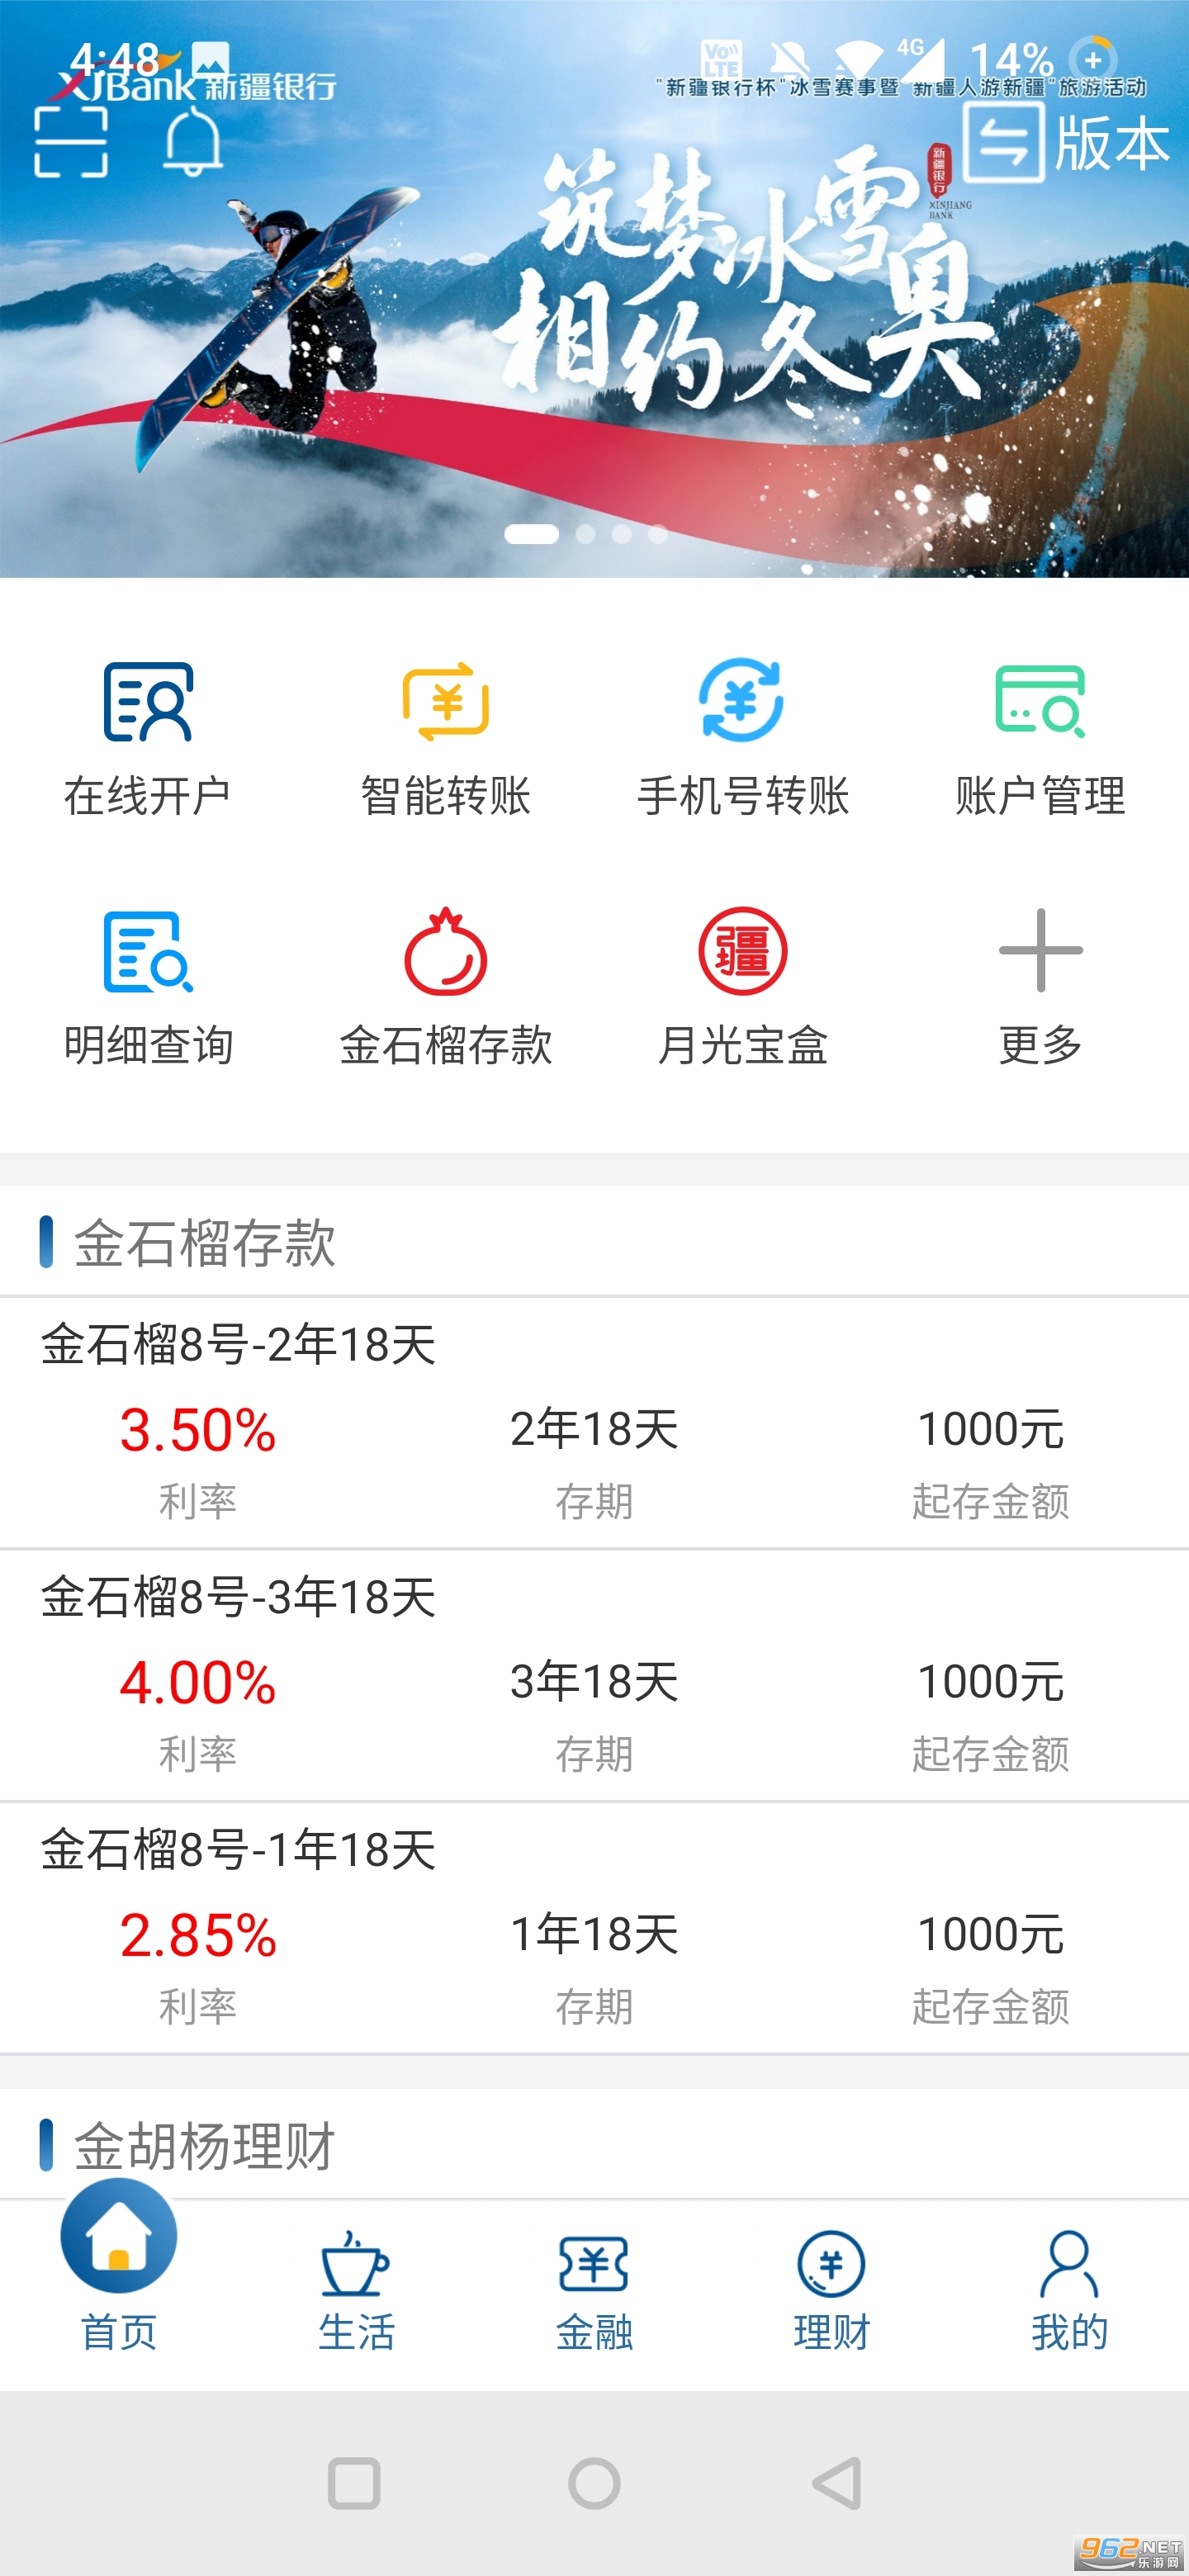 新疆银行手机银行app官方版 (免费下载)v4.1.0